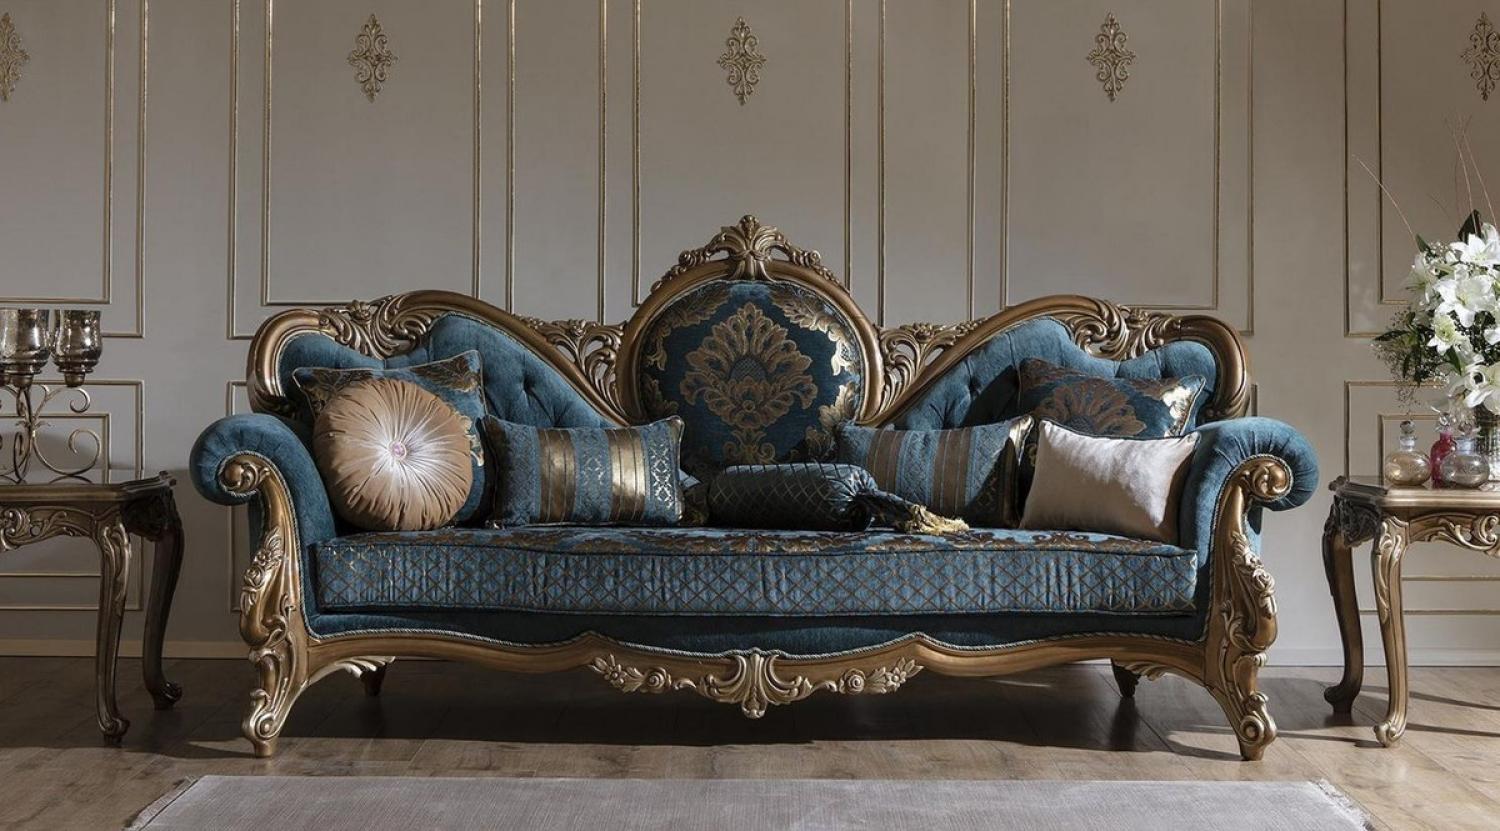 Casa Padrino Luxus Barock Sofa Blau / Gold 260 x 90 x H. 125 cm - Prunkvolles Wohnzimmer Sofa mit elegantem Muster und dekorativen Kissen Bild 1